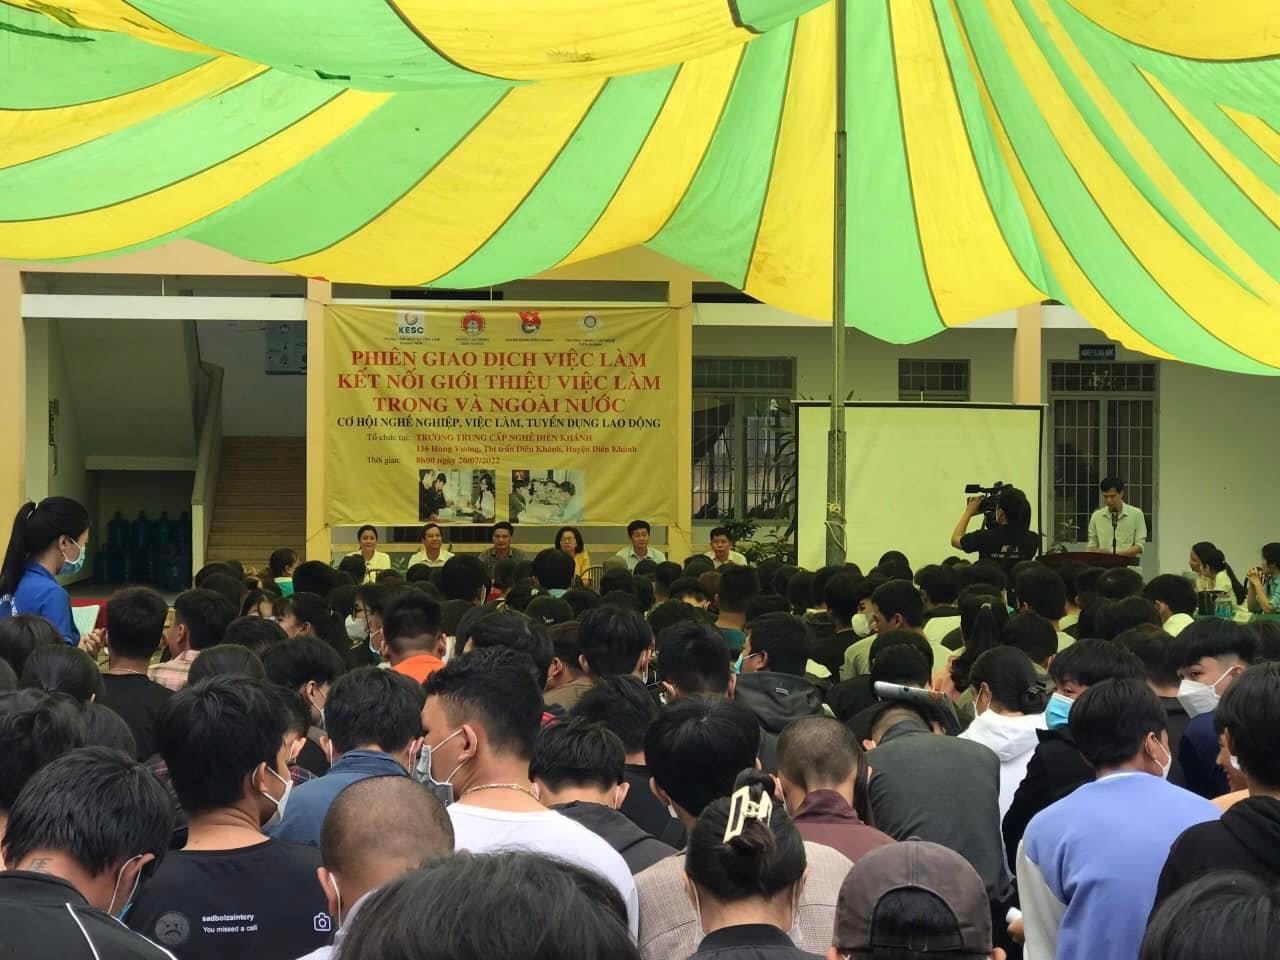 Một phiên giao dịch việc ở Khánh Hòa làm thu hút hàng trăm người lao động. Ảnh: Thu Cúc